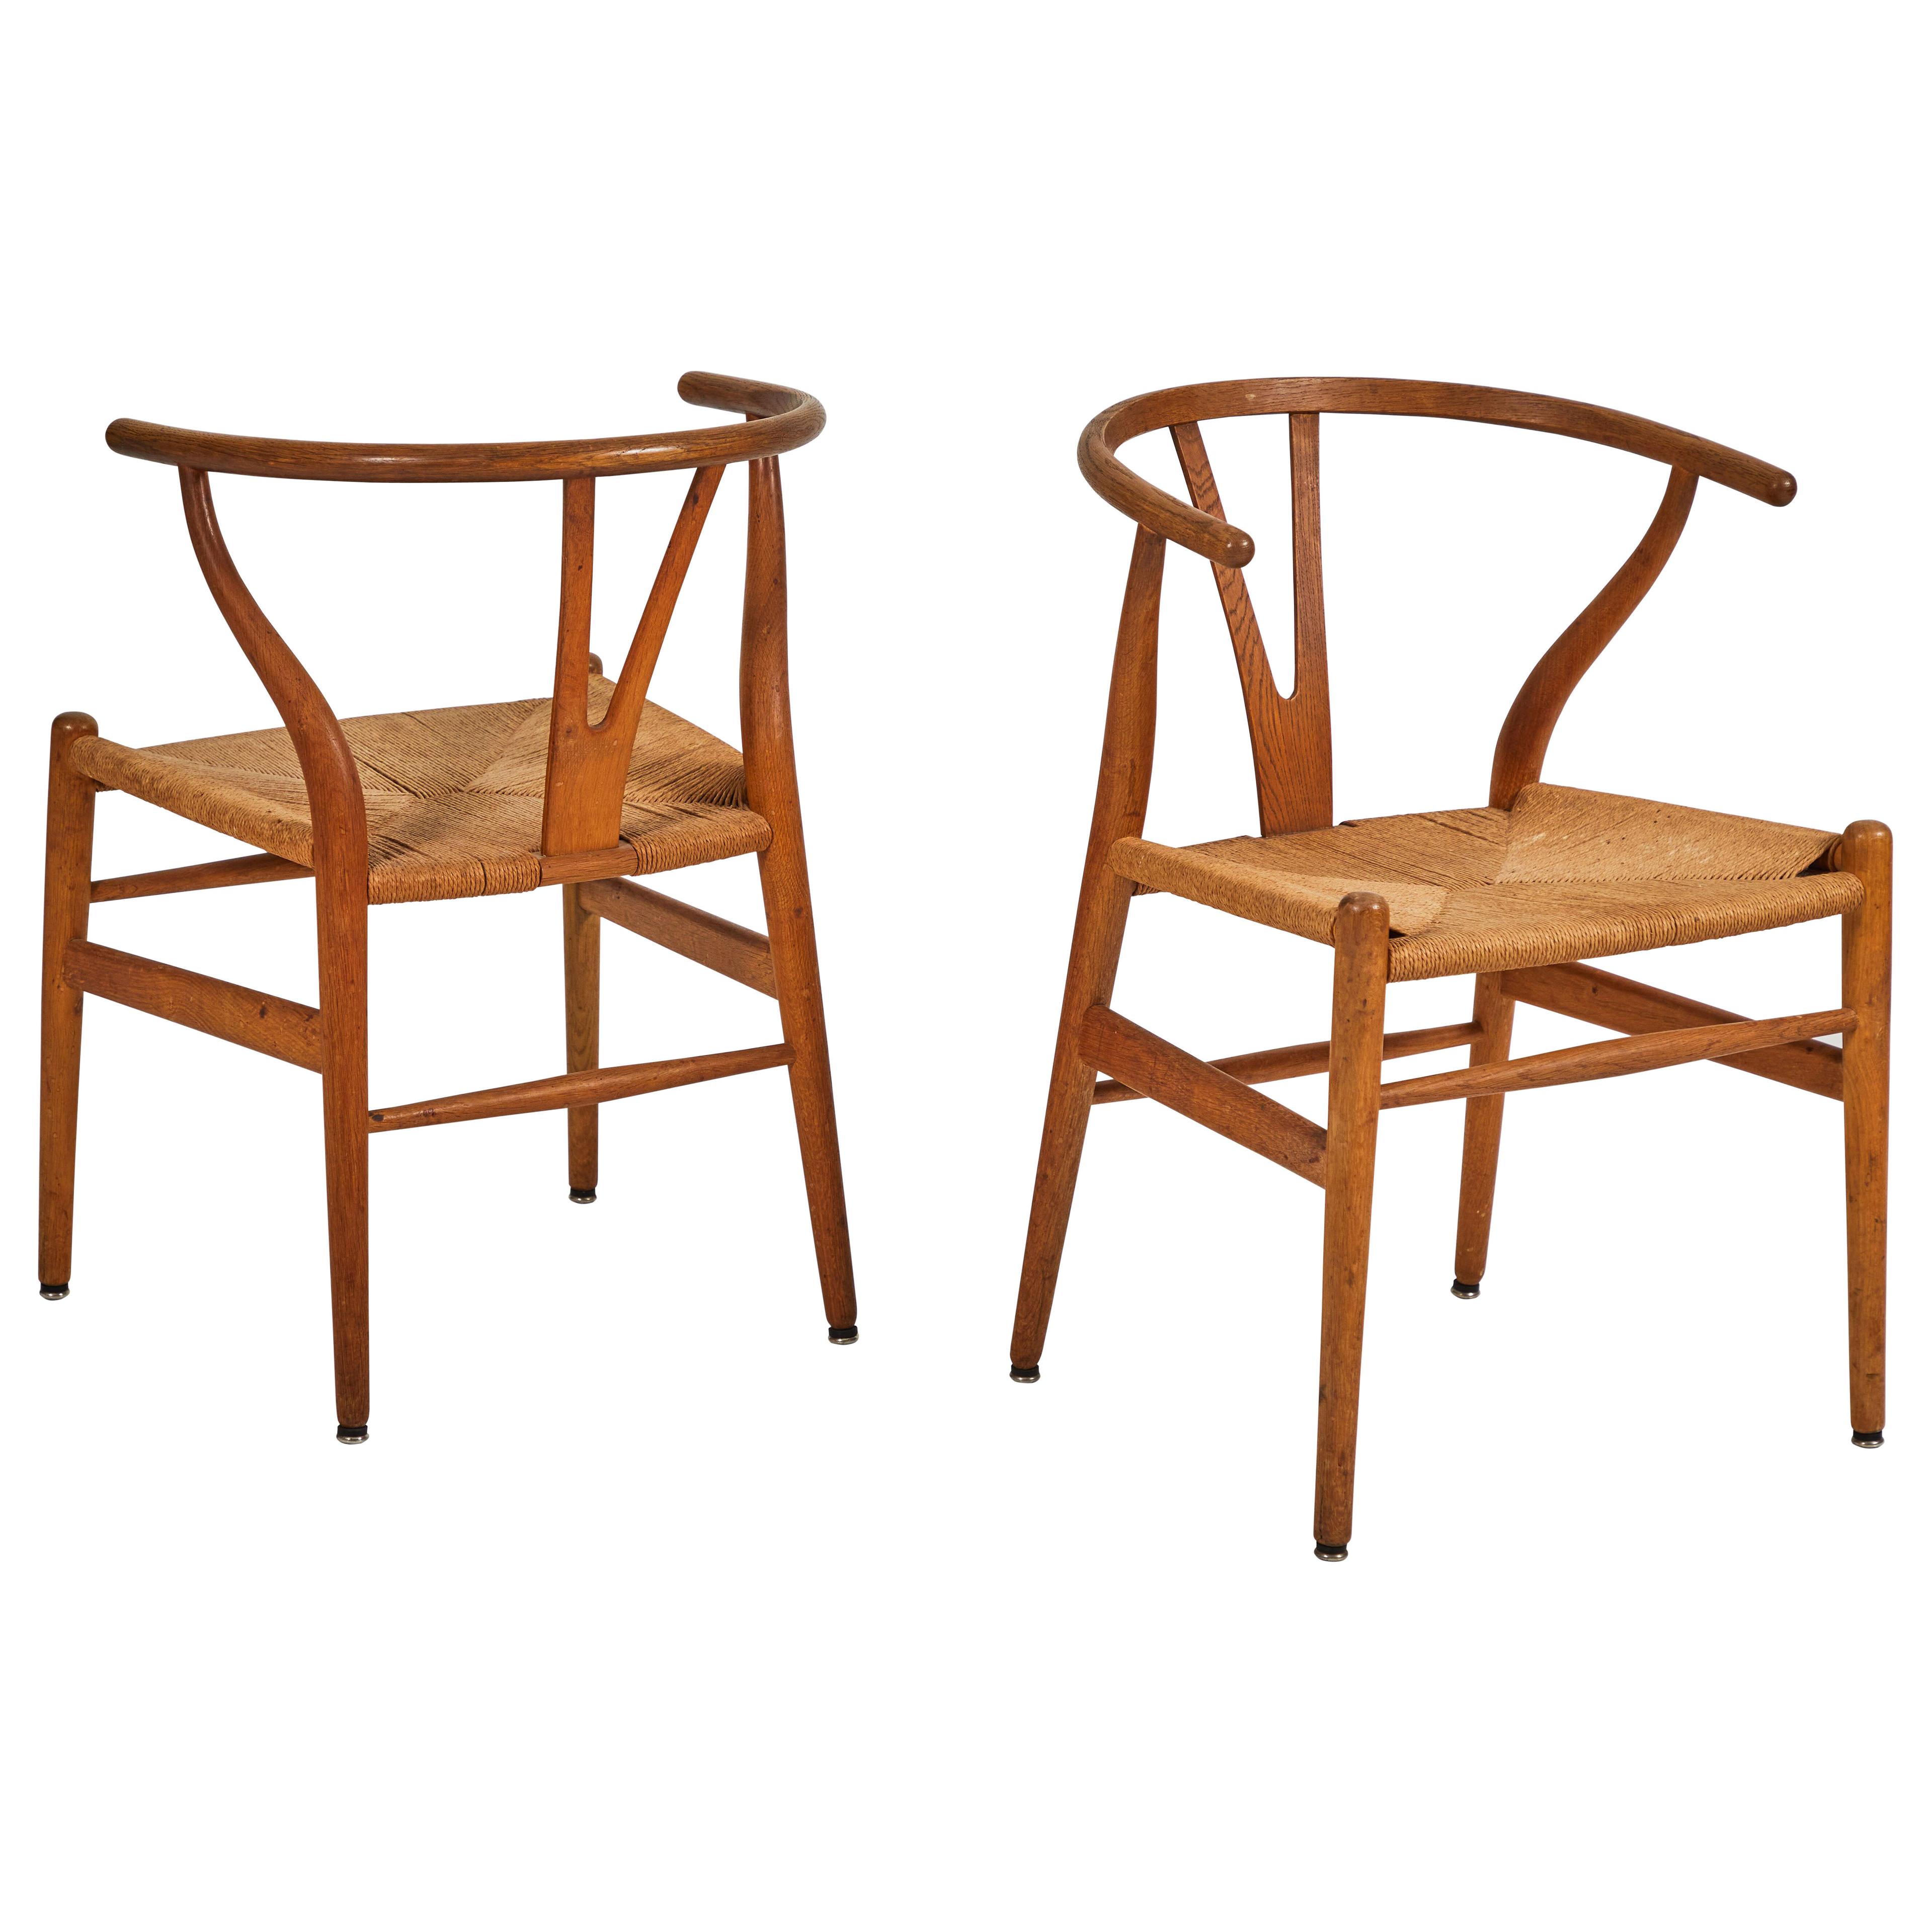 A Pair of Hans Wegner Wishbone Chairs